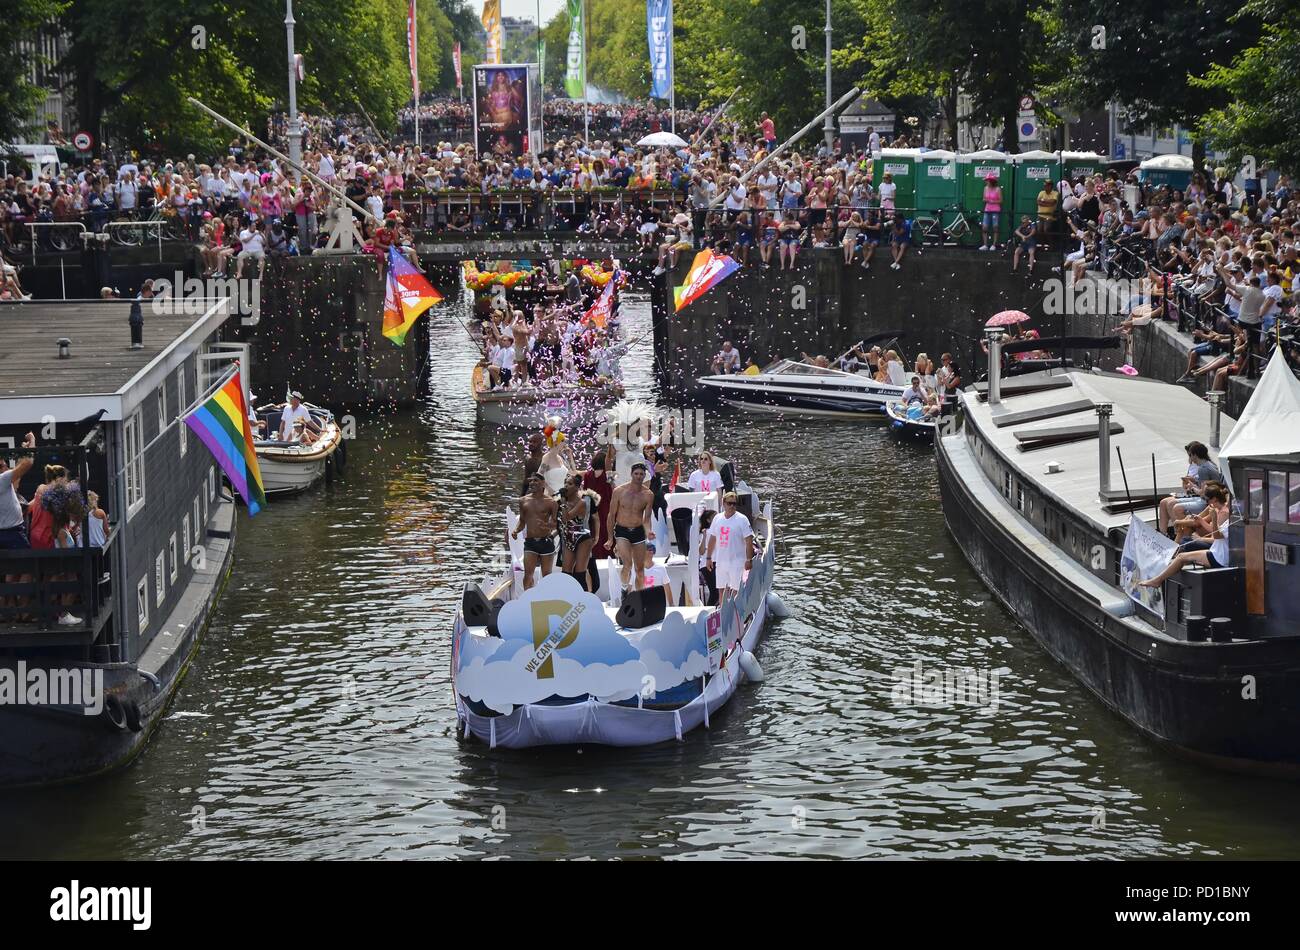 Amsterdam, Pays-Bas - 4 août 2018 : Le bateau (numéro 0) transportant le thème slogen, 'Nous pouvons être des héros' au moment de la Pride Parade de bateaux Crédit : Adam Photographie/Szuly Alamy Live News Banque D'Images